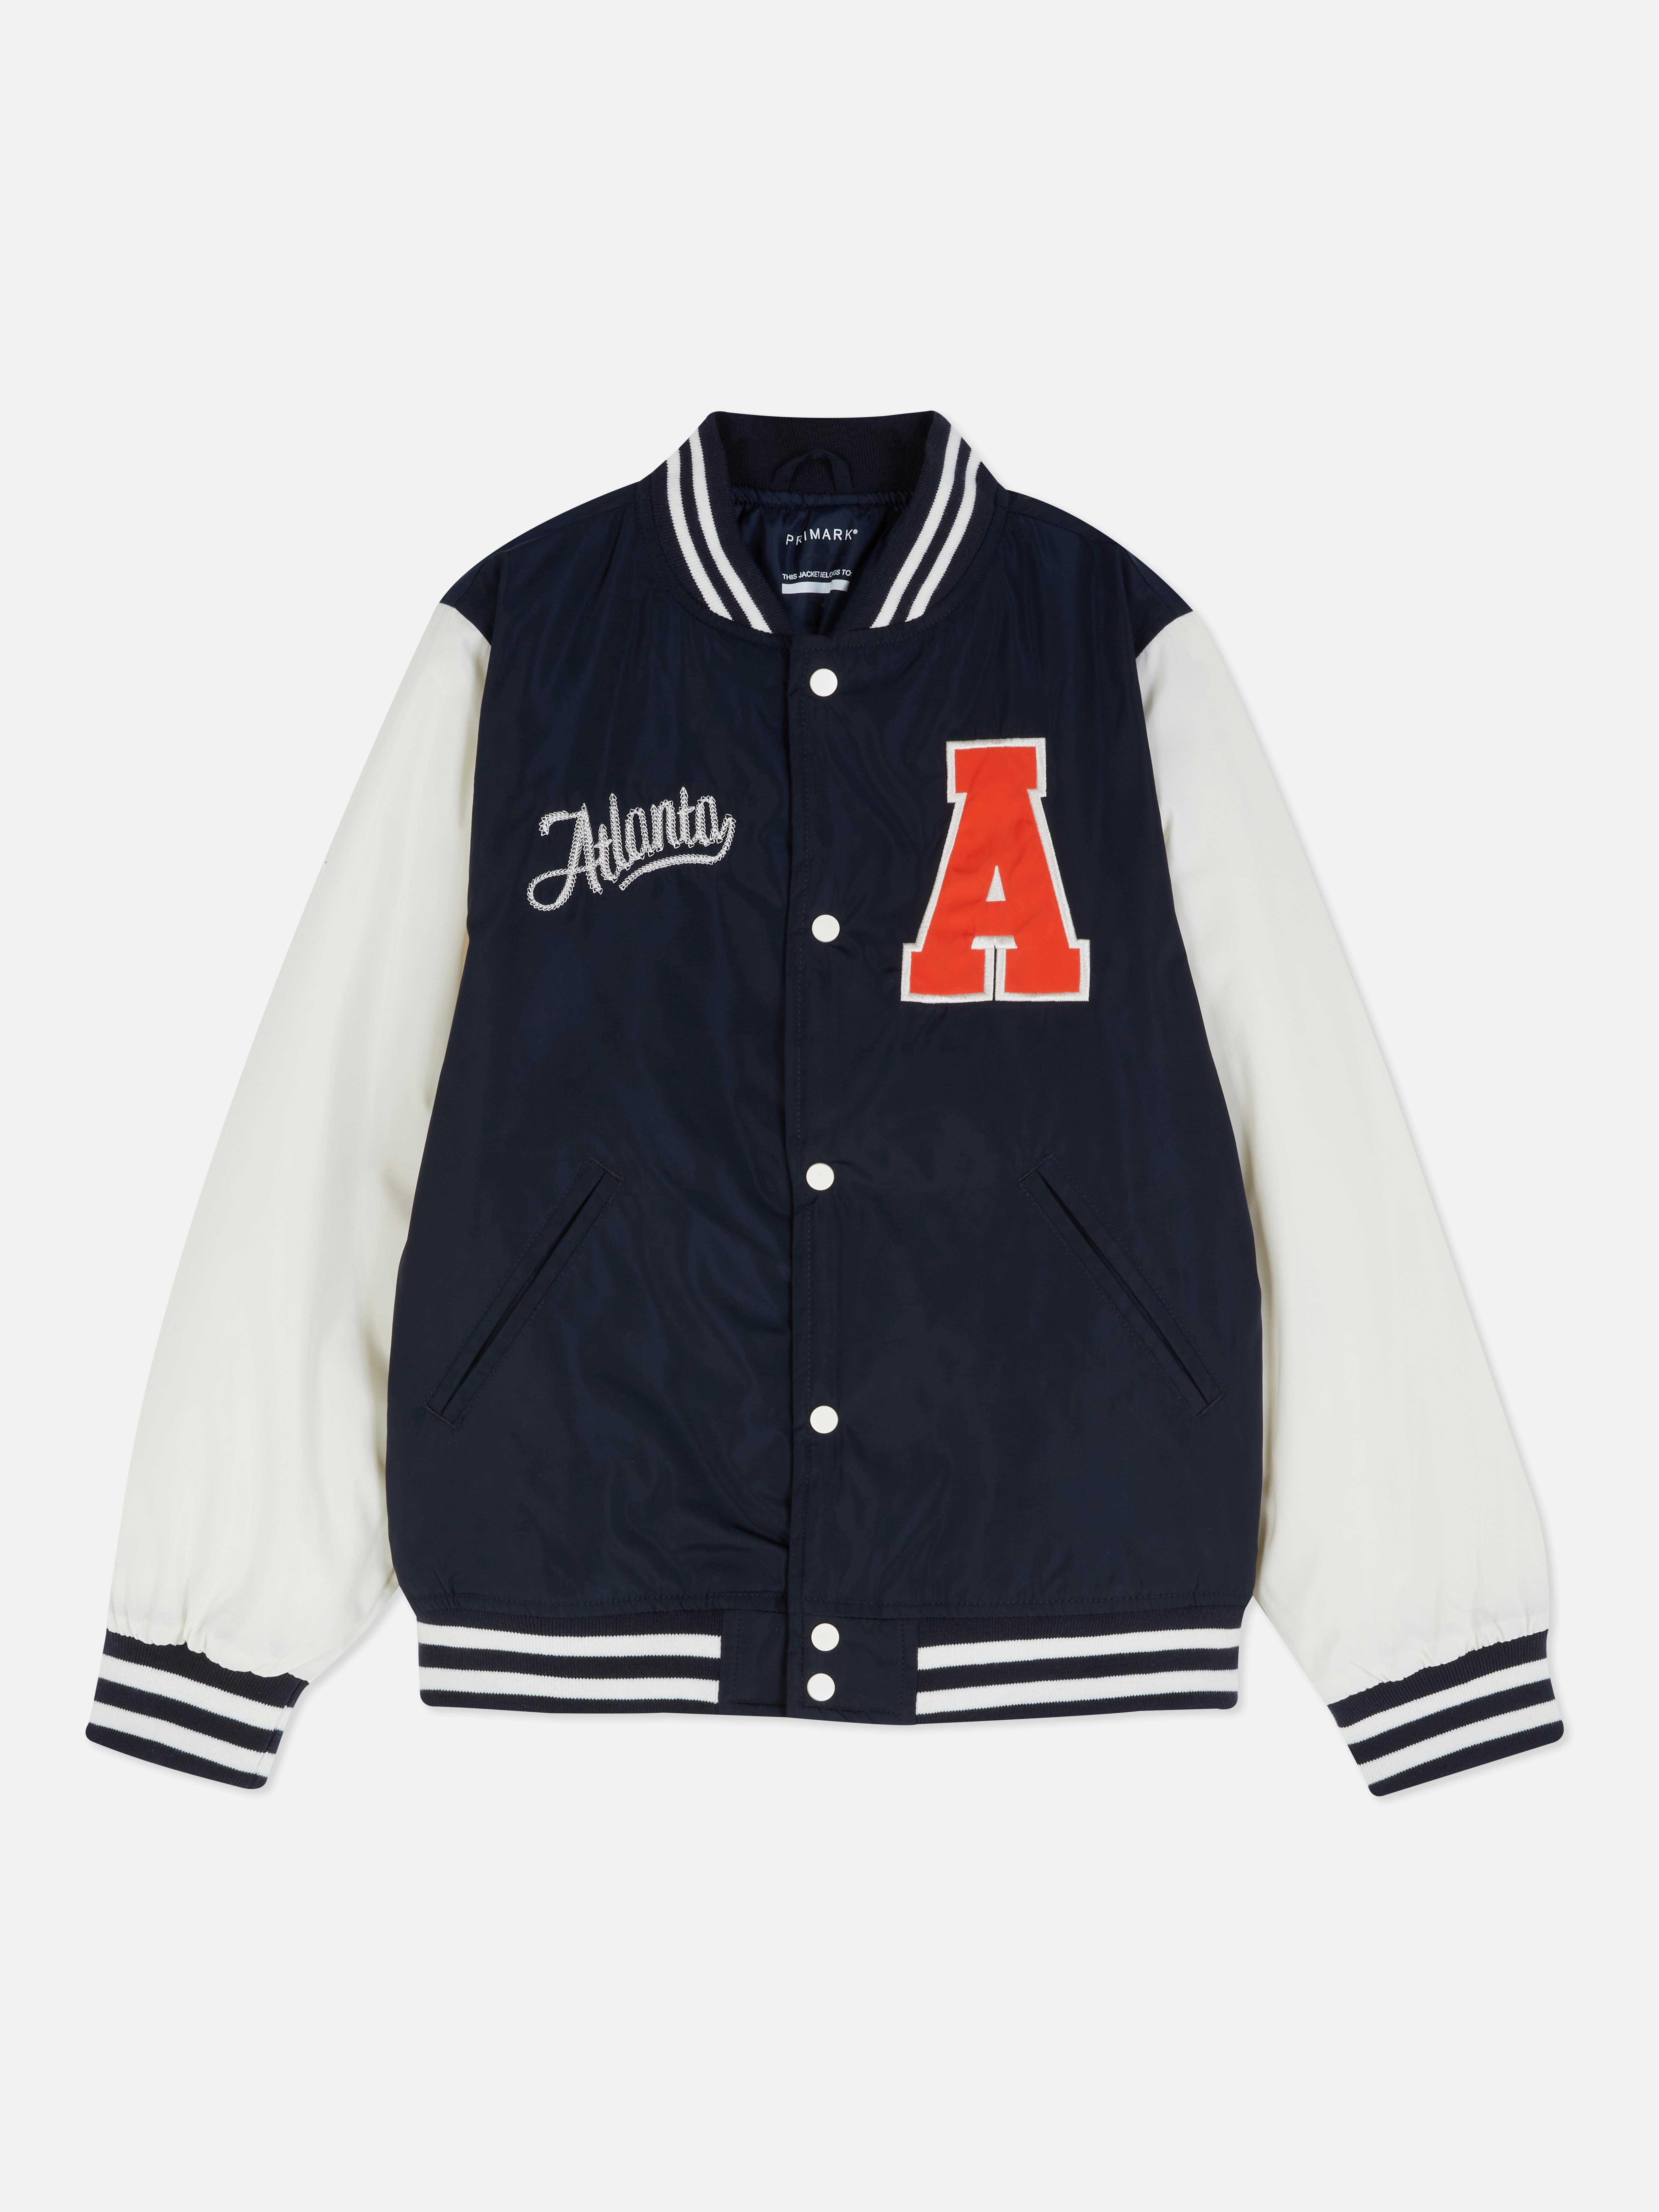 Atlanta Varsity Jacket